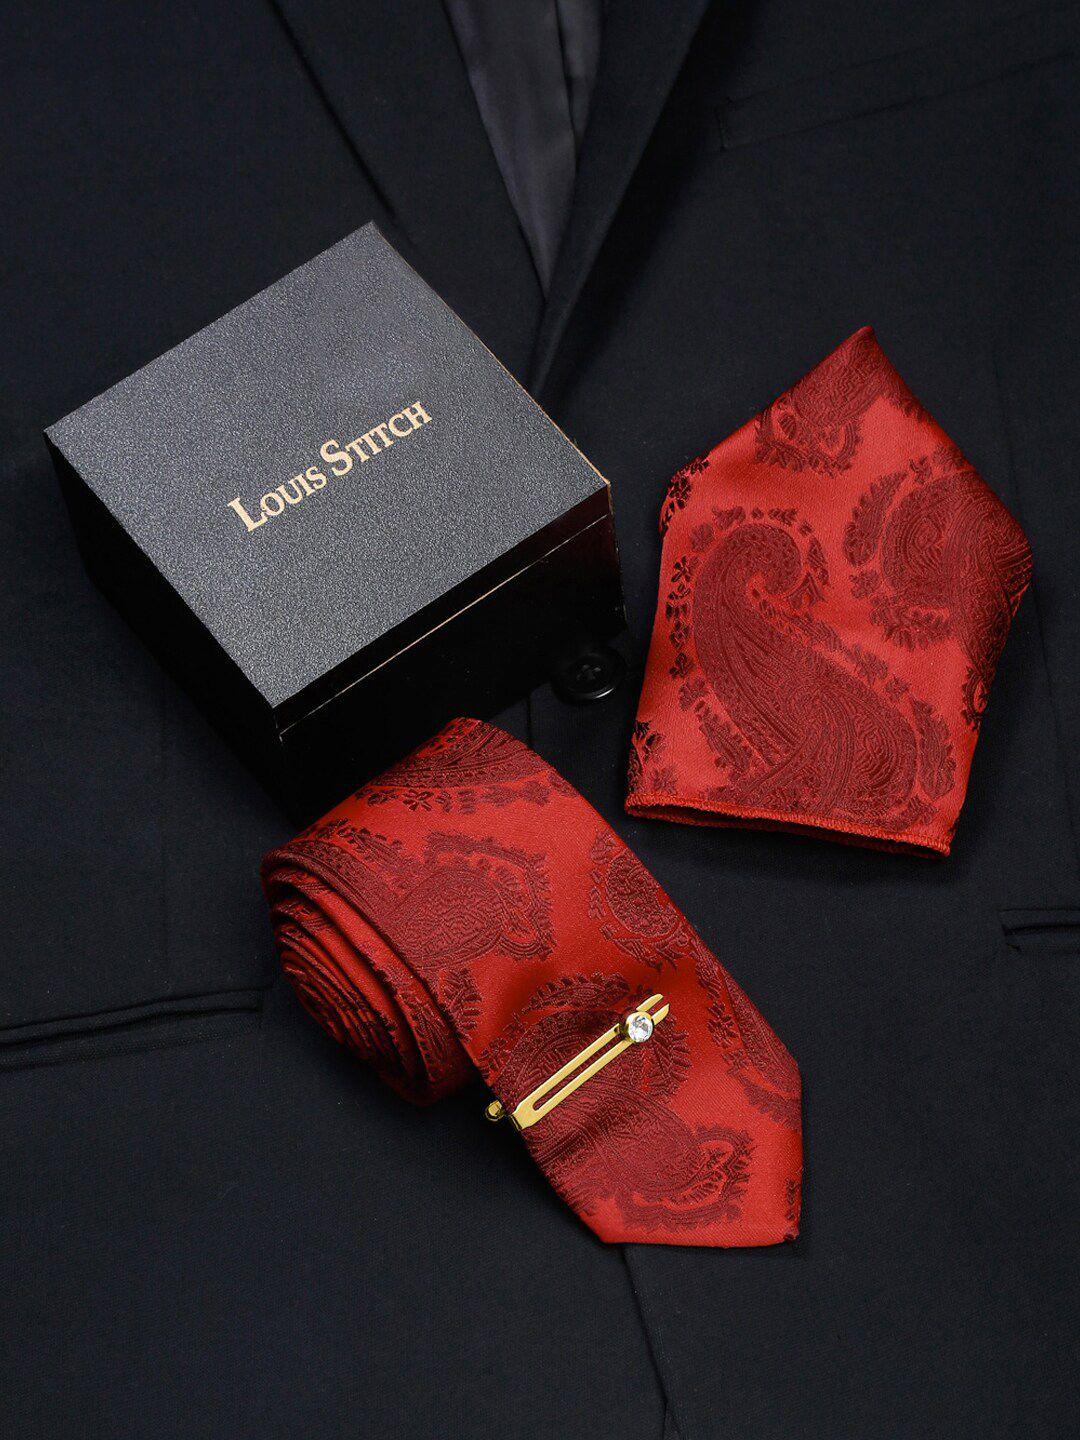 louis stitch men printed italian silk necktie accessory gift set